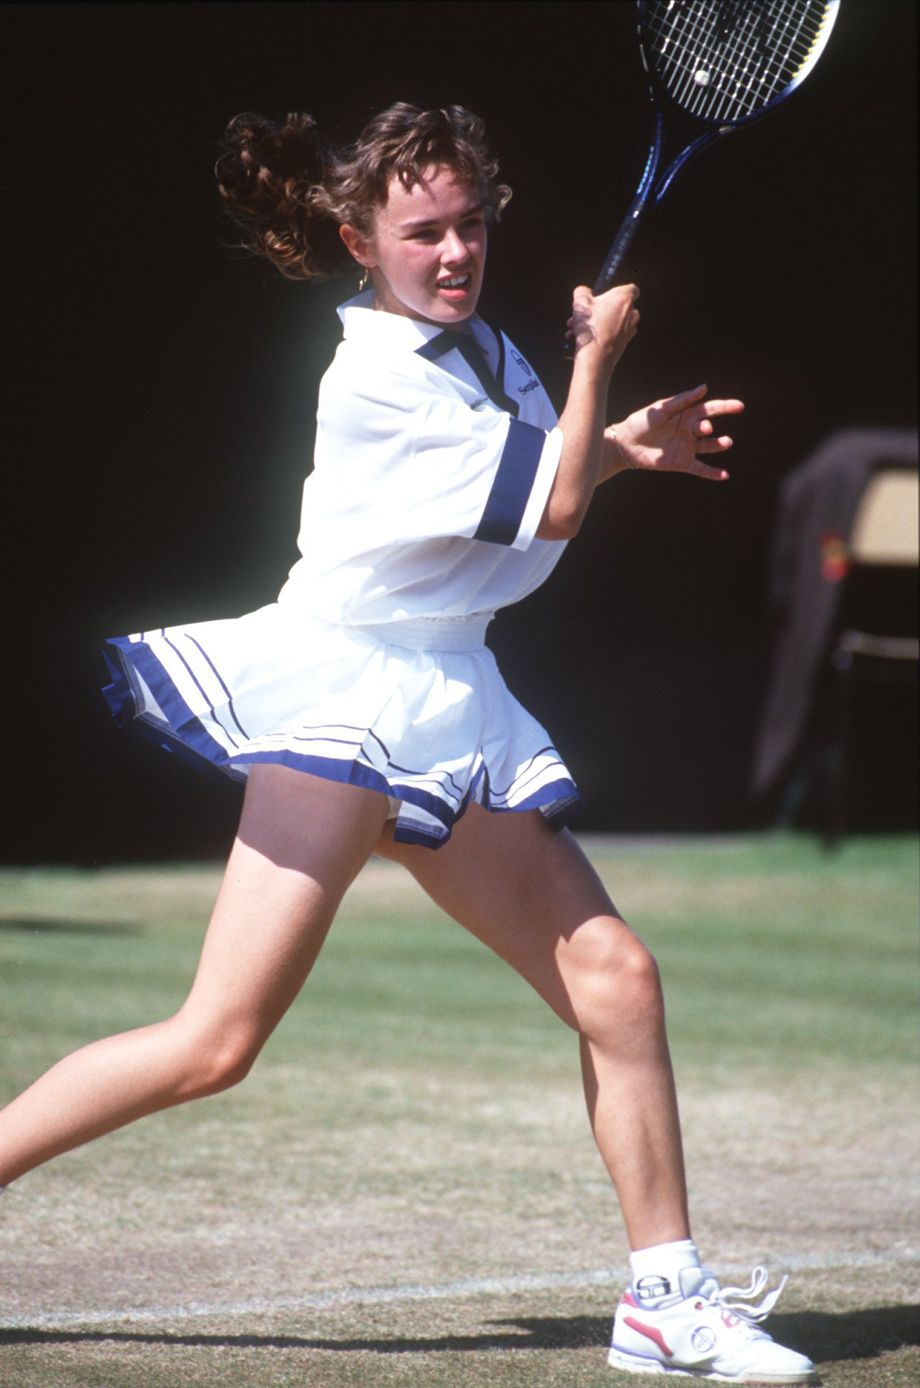 Australian Open: Мартина Хингис в вызывающем наряде ошеломила публику на турнире в 1996 году